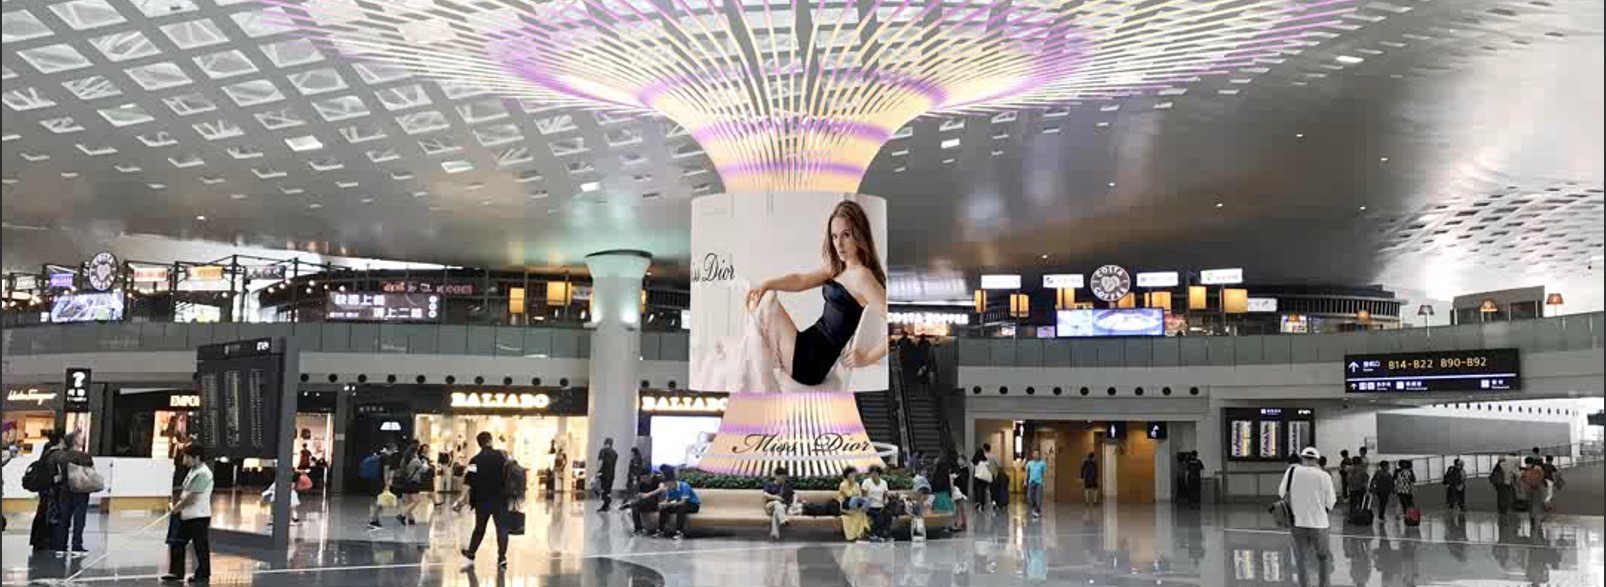 杭州萧山机场广告-T3国内出发安检后创意媒体CY01